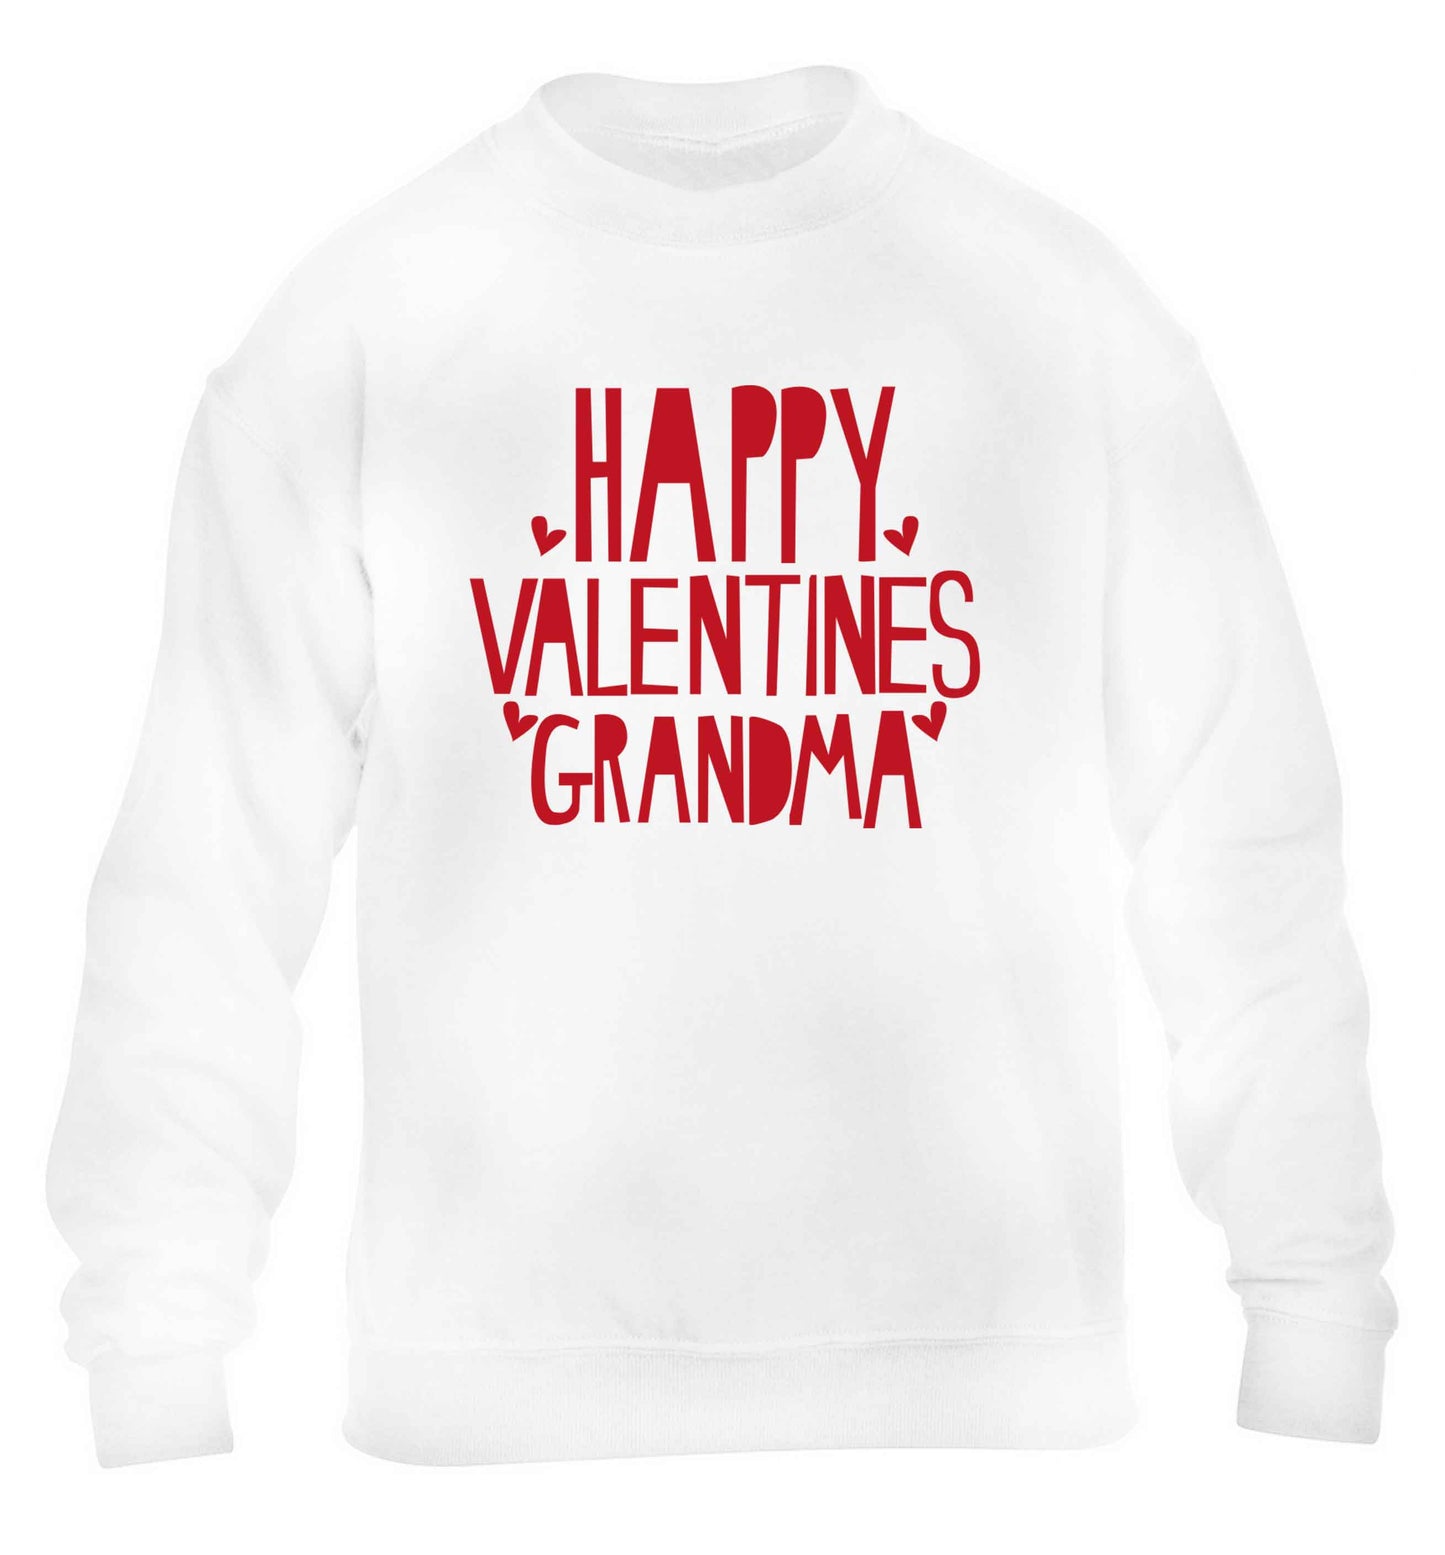 Happy valentines grandma children's white sweater 12-13 Years